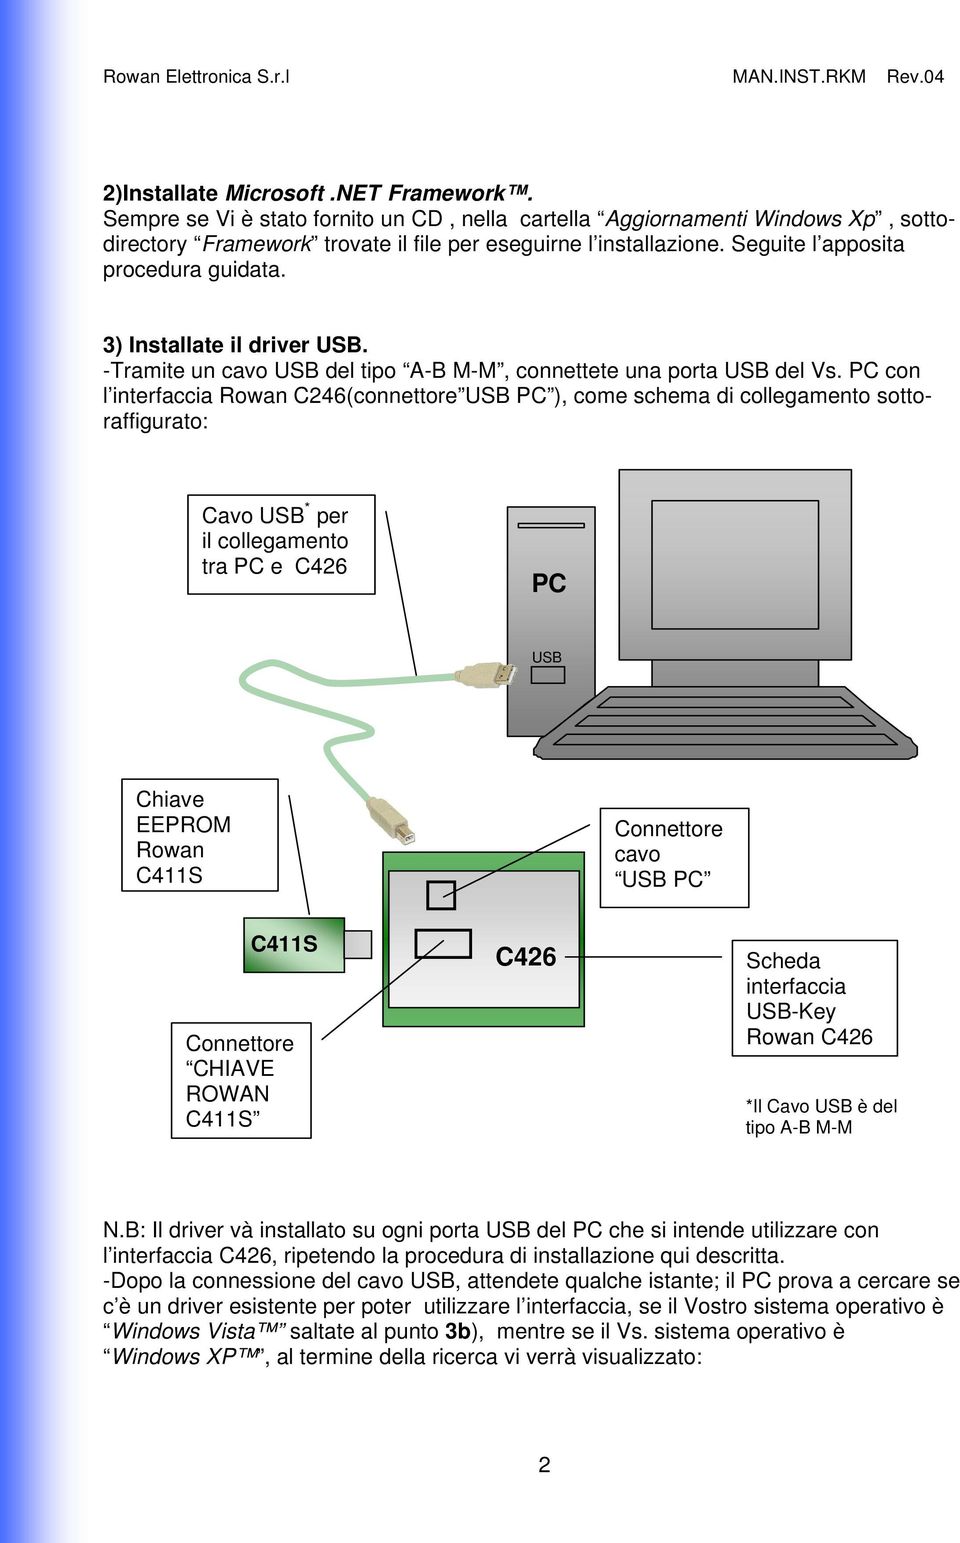 PC con l interfaccia Rowan C246(connettore USB PC ), come schema di collegamento sottoraffigurato: Cavo USB * per il collegamento tra PC e C426 PC USB Chiave EEPROM Rowan C411S Connettore cavo USB PC